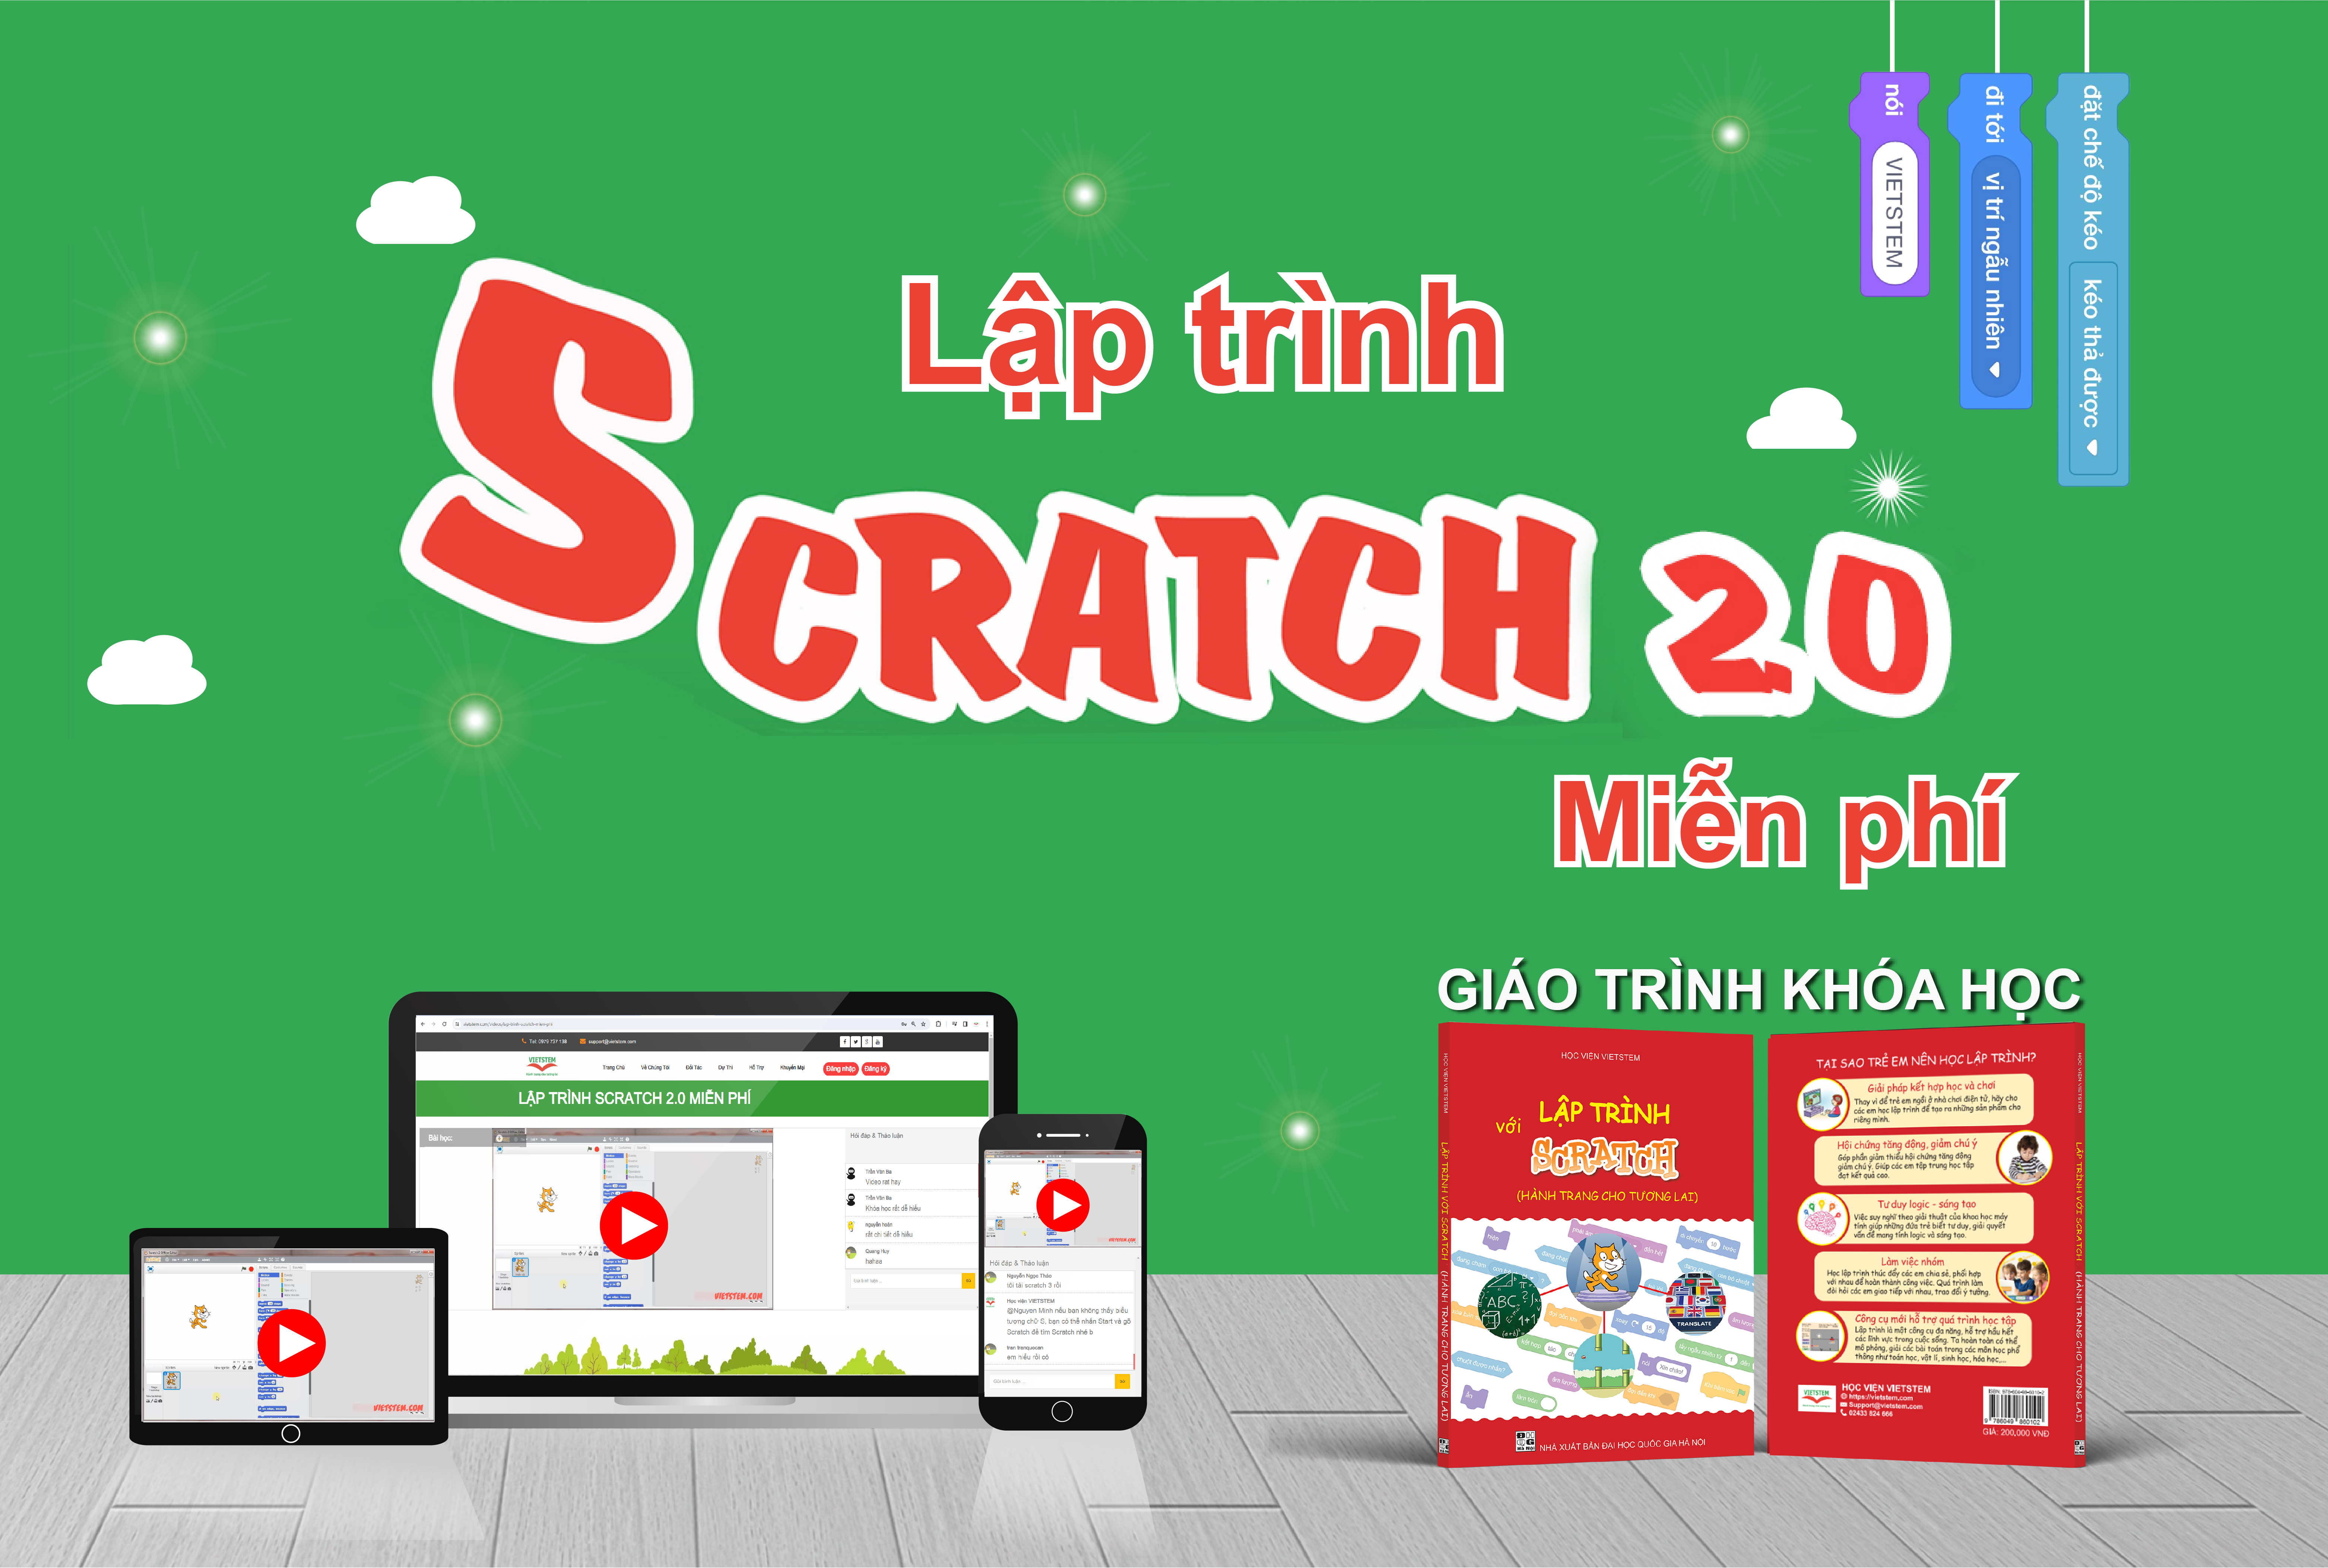 Lập trình Scratch 2.0 Miễn phí